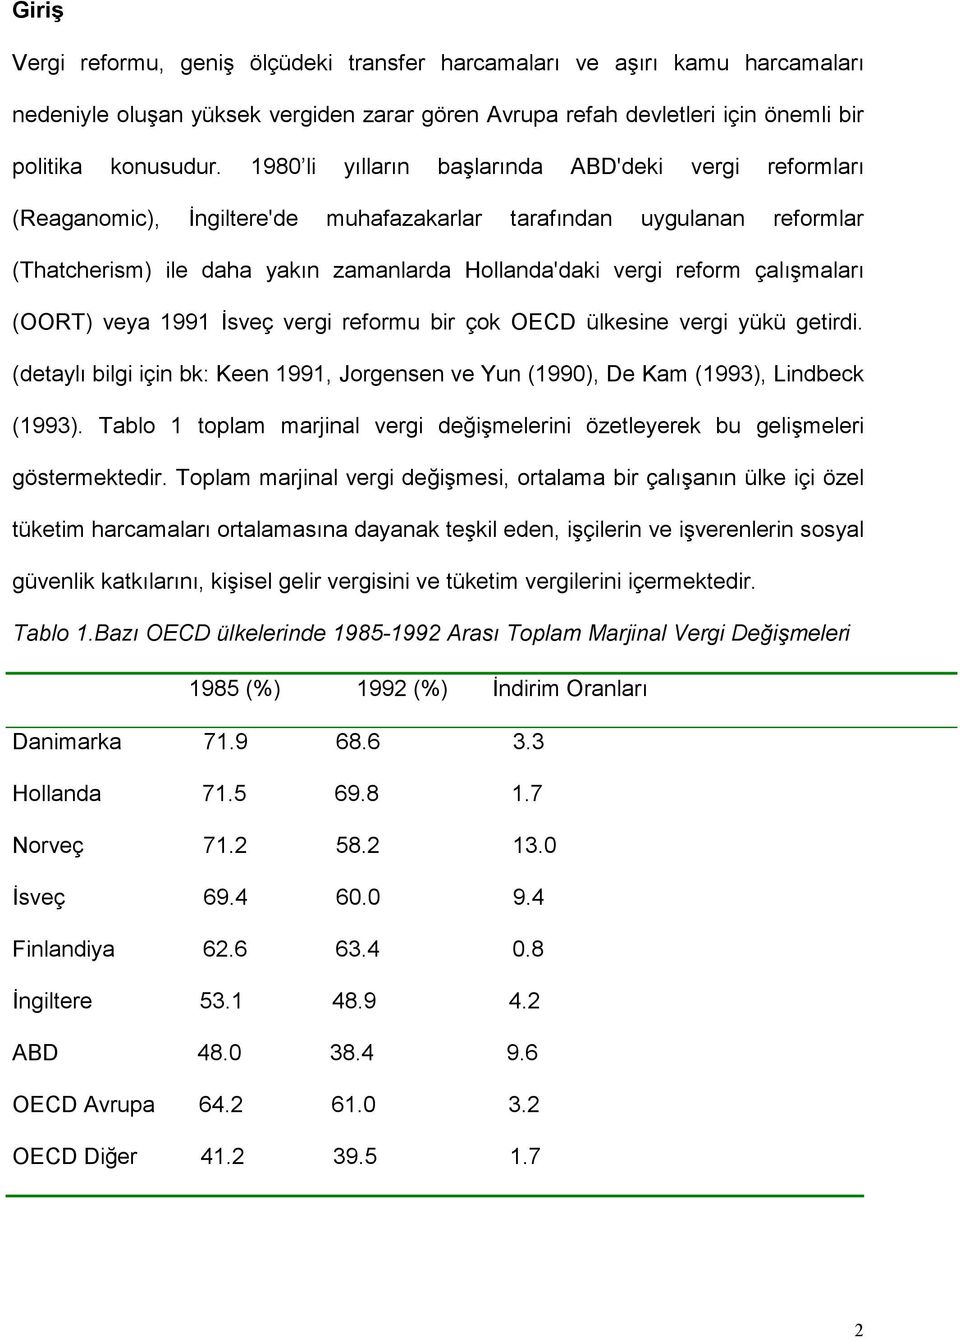 çalışmaları (OORT) veya 1991 İsveç vergi reformu bir çok OECD ülkesine vergi yükü getirdi. (detaylı bilgi için bk: Keen 1991, Jorgensen ve Yun (1990), De Kam (1993), Lindbeck (1993).